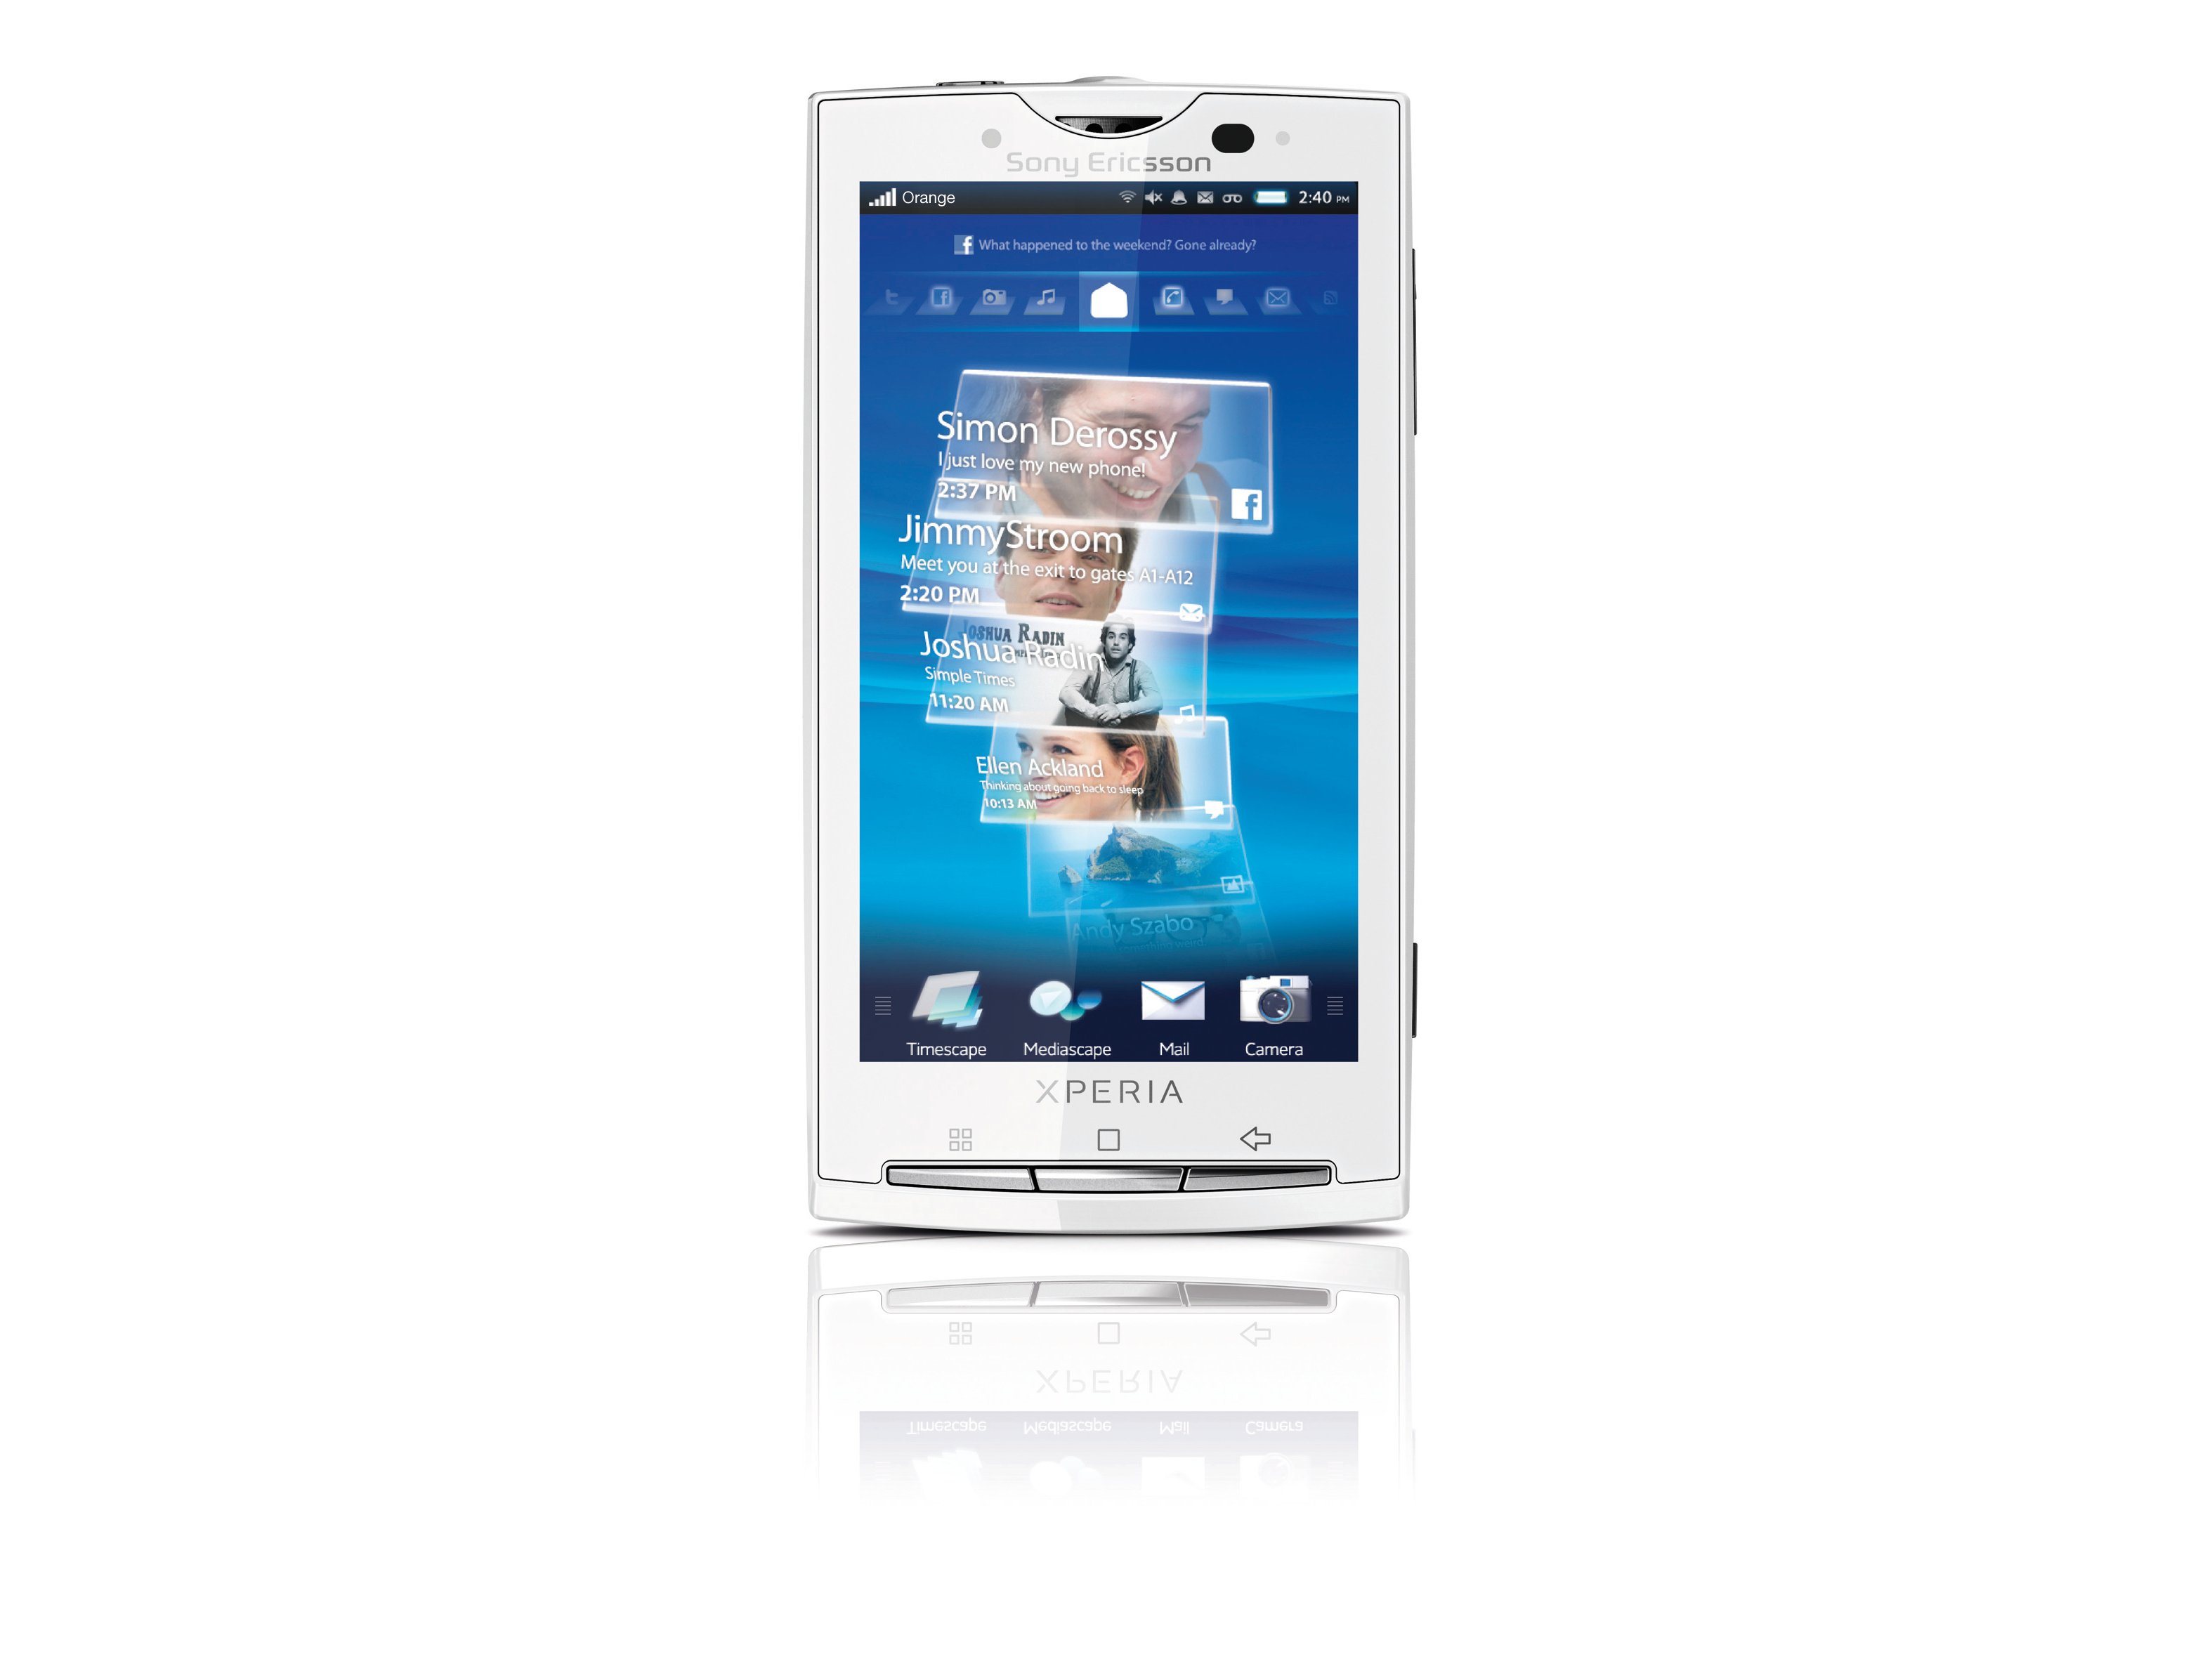 Er is behoefte aan altijd Biscuit Sony Ericsson Xperia X10 review | TechRadar